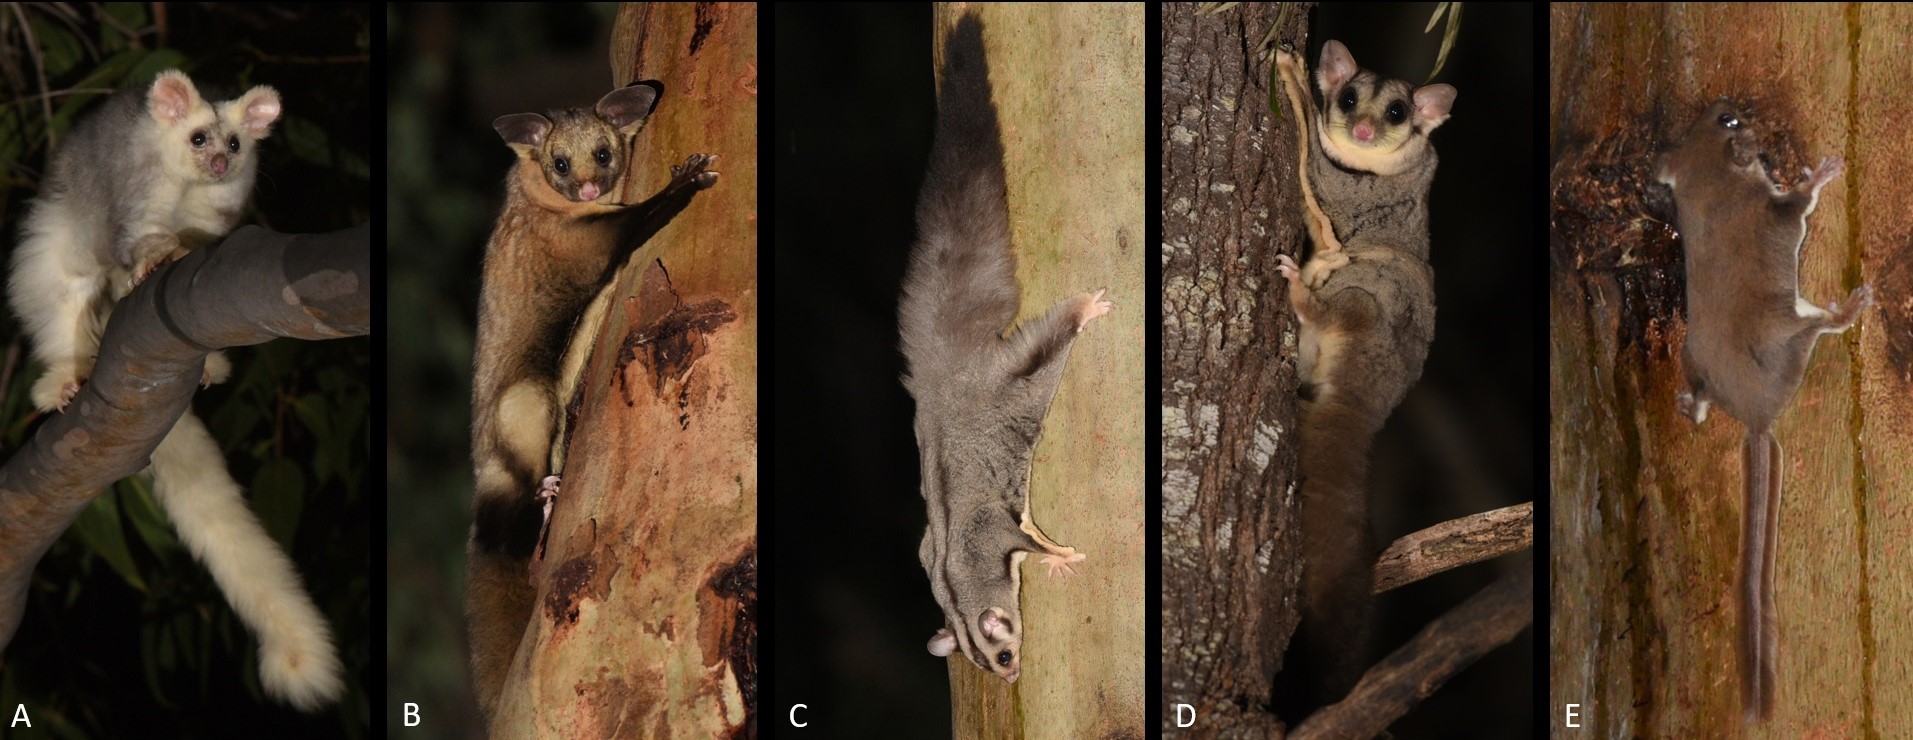 A: Greater Glider, B: Yellow-bellied Glider, C: Squirrel Glider, D: Krefft's Glider, E: Feathertail Glider (Wild for Wildlife - CC).